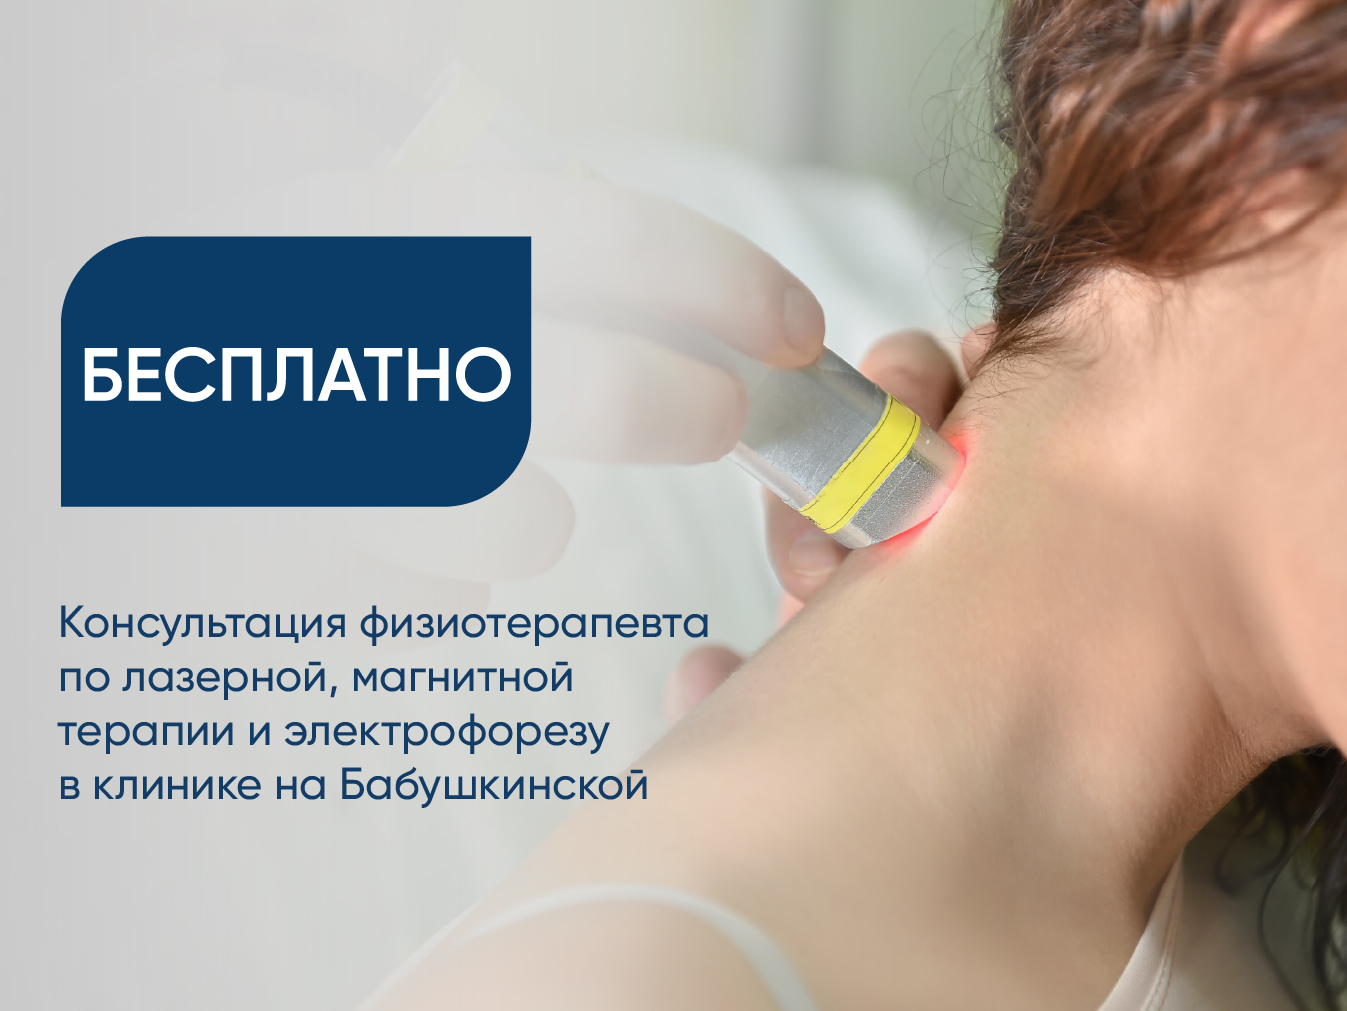 Бесплатная консультация физиотерапевта по лазерной, магнитной терапии и электрофорезу в клинике на Бабушкинской